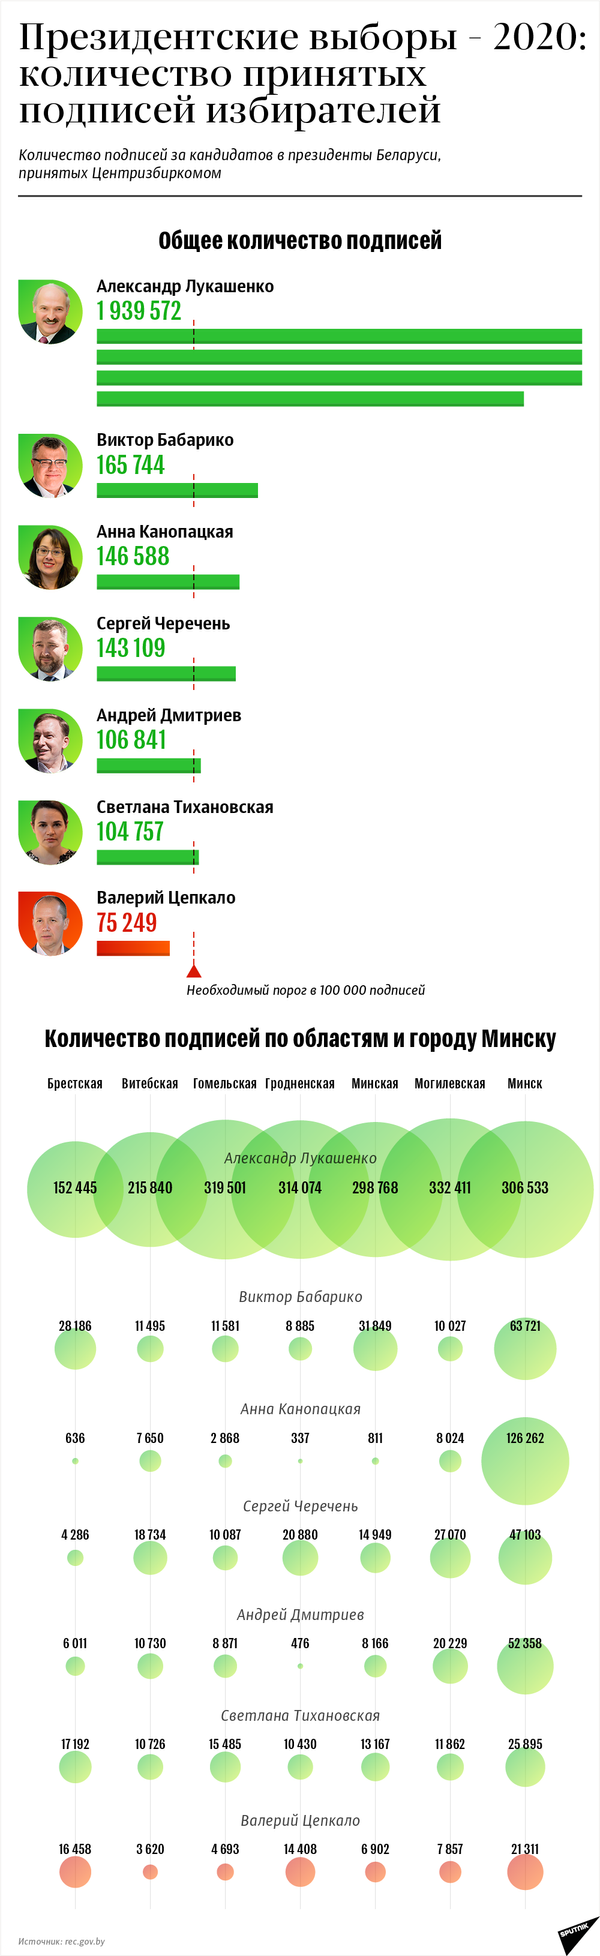 Президентские выборы – 2020: количество принятых подписей избирателей | Инфографика sputnik.by - Sputnik Беларусь